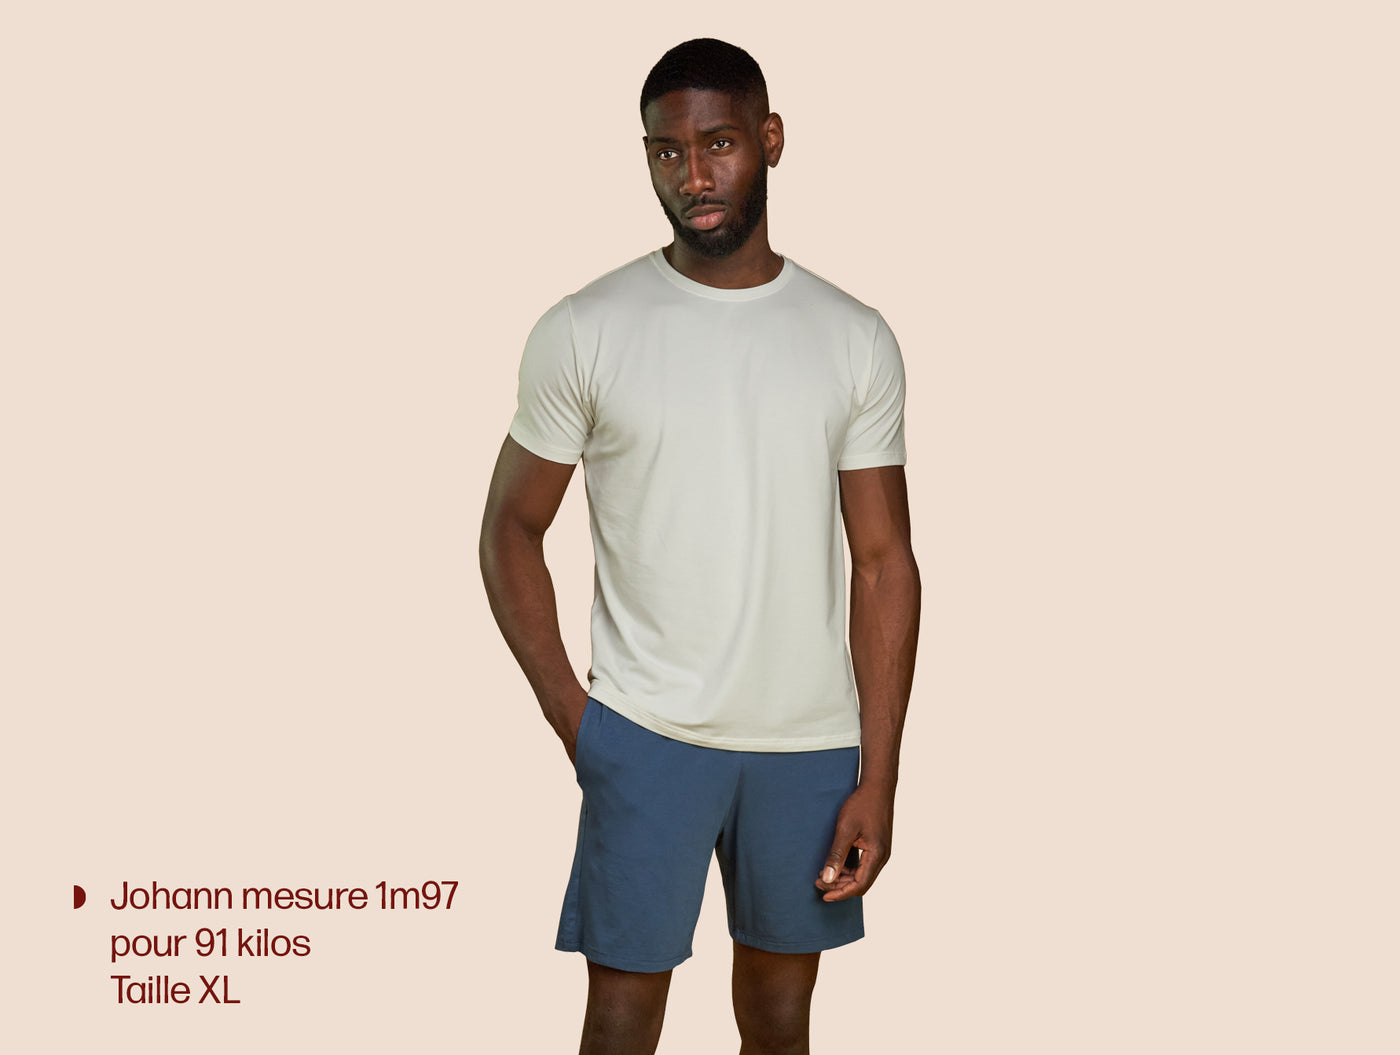 Pétrone T-shirt manches courtes coton pima micromodal blanc-crème homme#couleur_blanc-crème